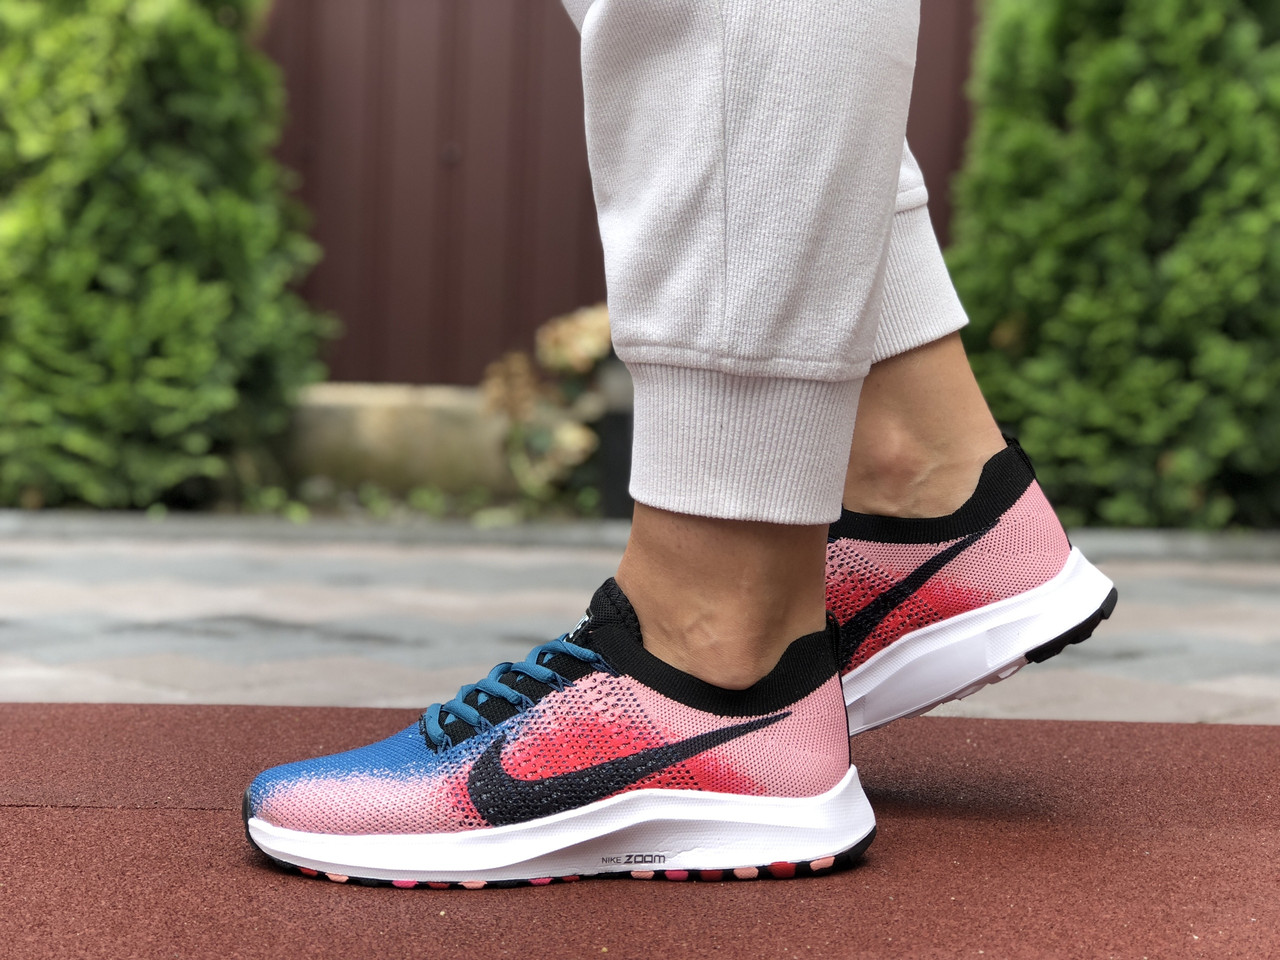 

Кроссовки женские Nike Zoom синие с красным, Найк Зум, текстильные, прошиты. Код SD-9596